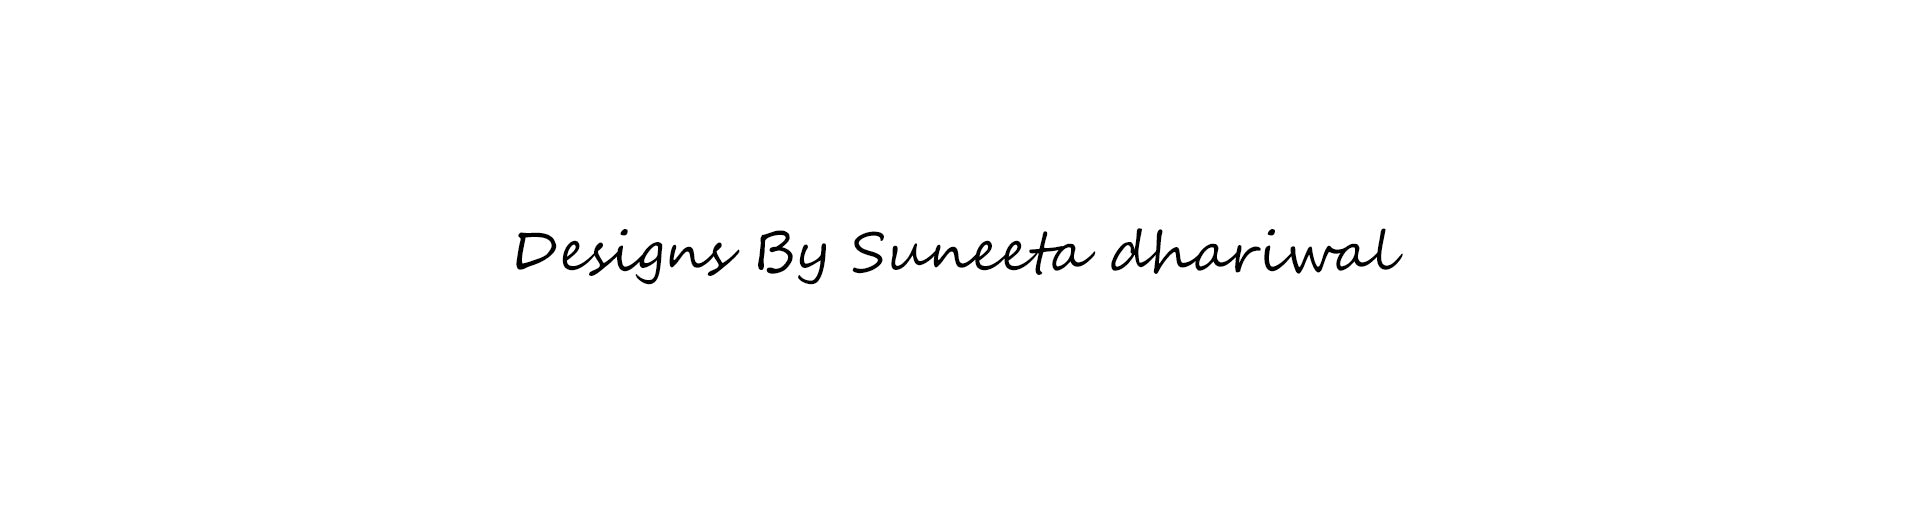 Suneeta dhariwal